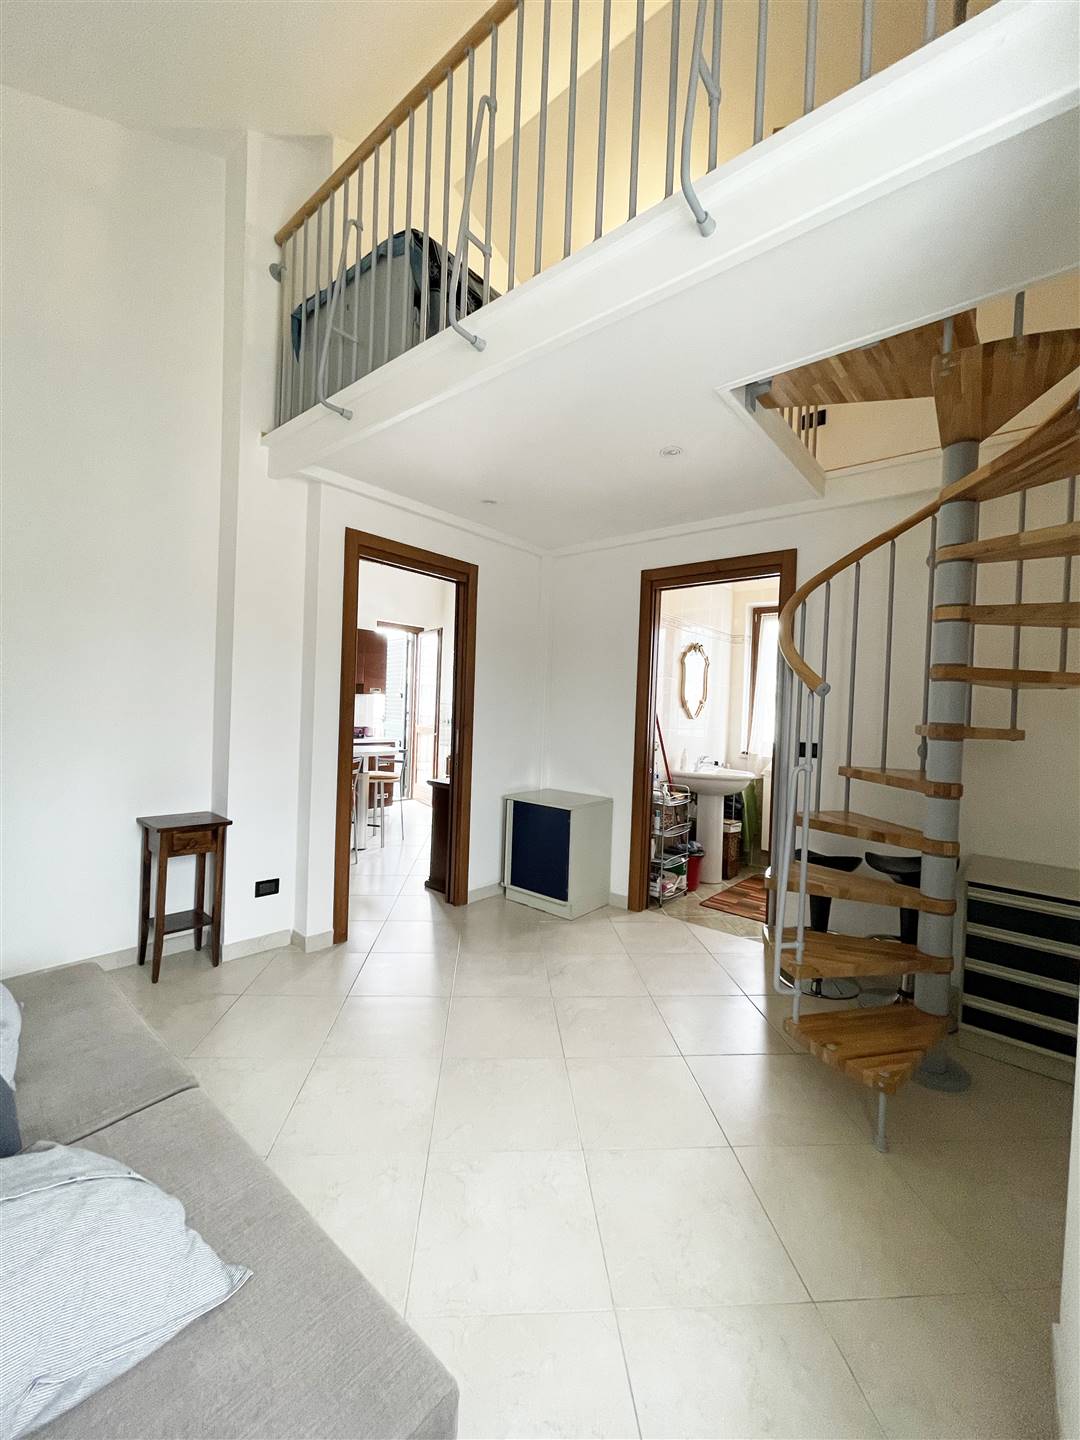 Appartamento in vendita a Sarzana, 2 locali, zona Località: BRADIA, prezzo € 145.000 | PortaleAgenzieImmobiliari.it